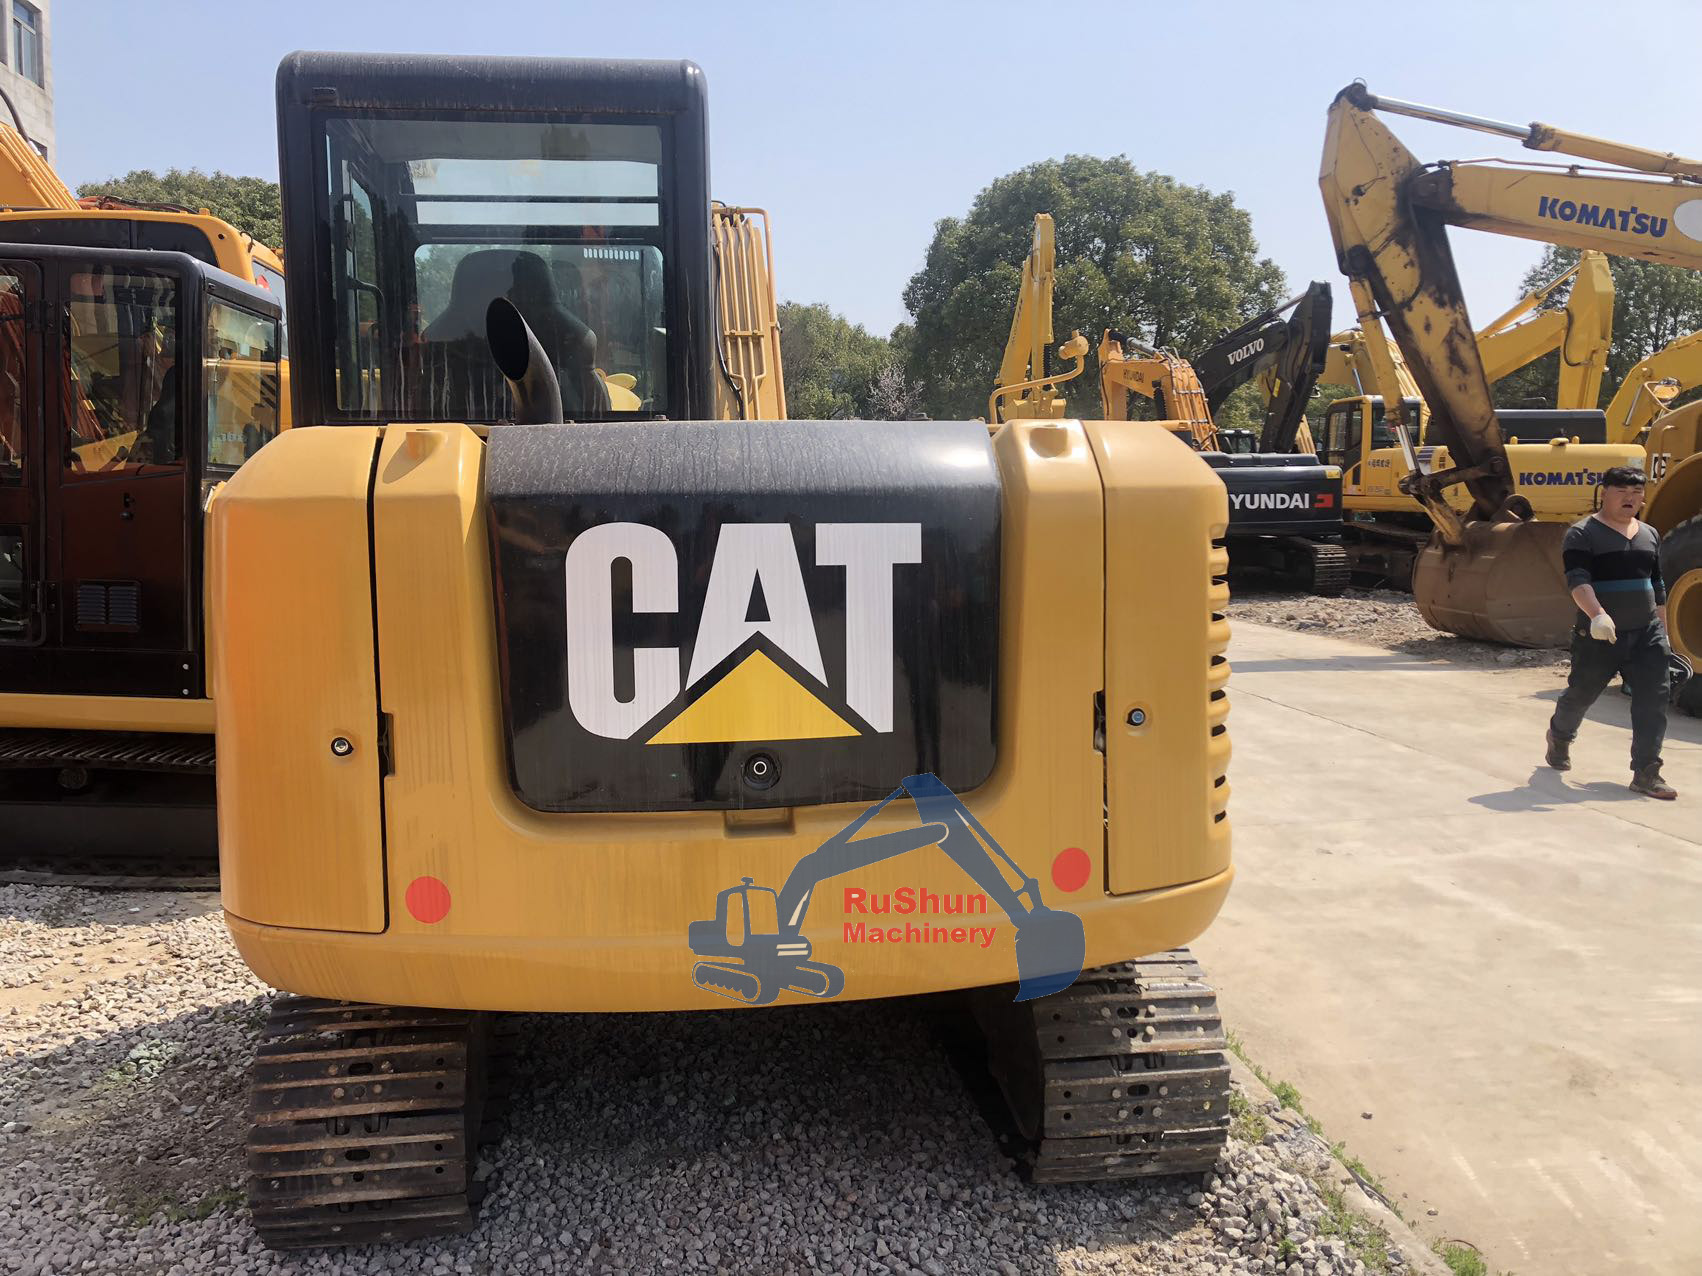 Used CAT 305.5E2  Excavator